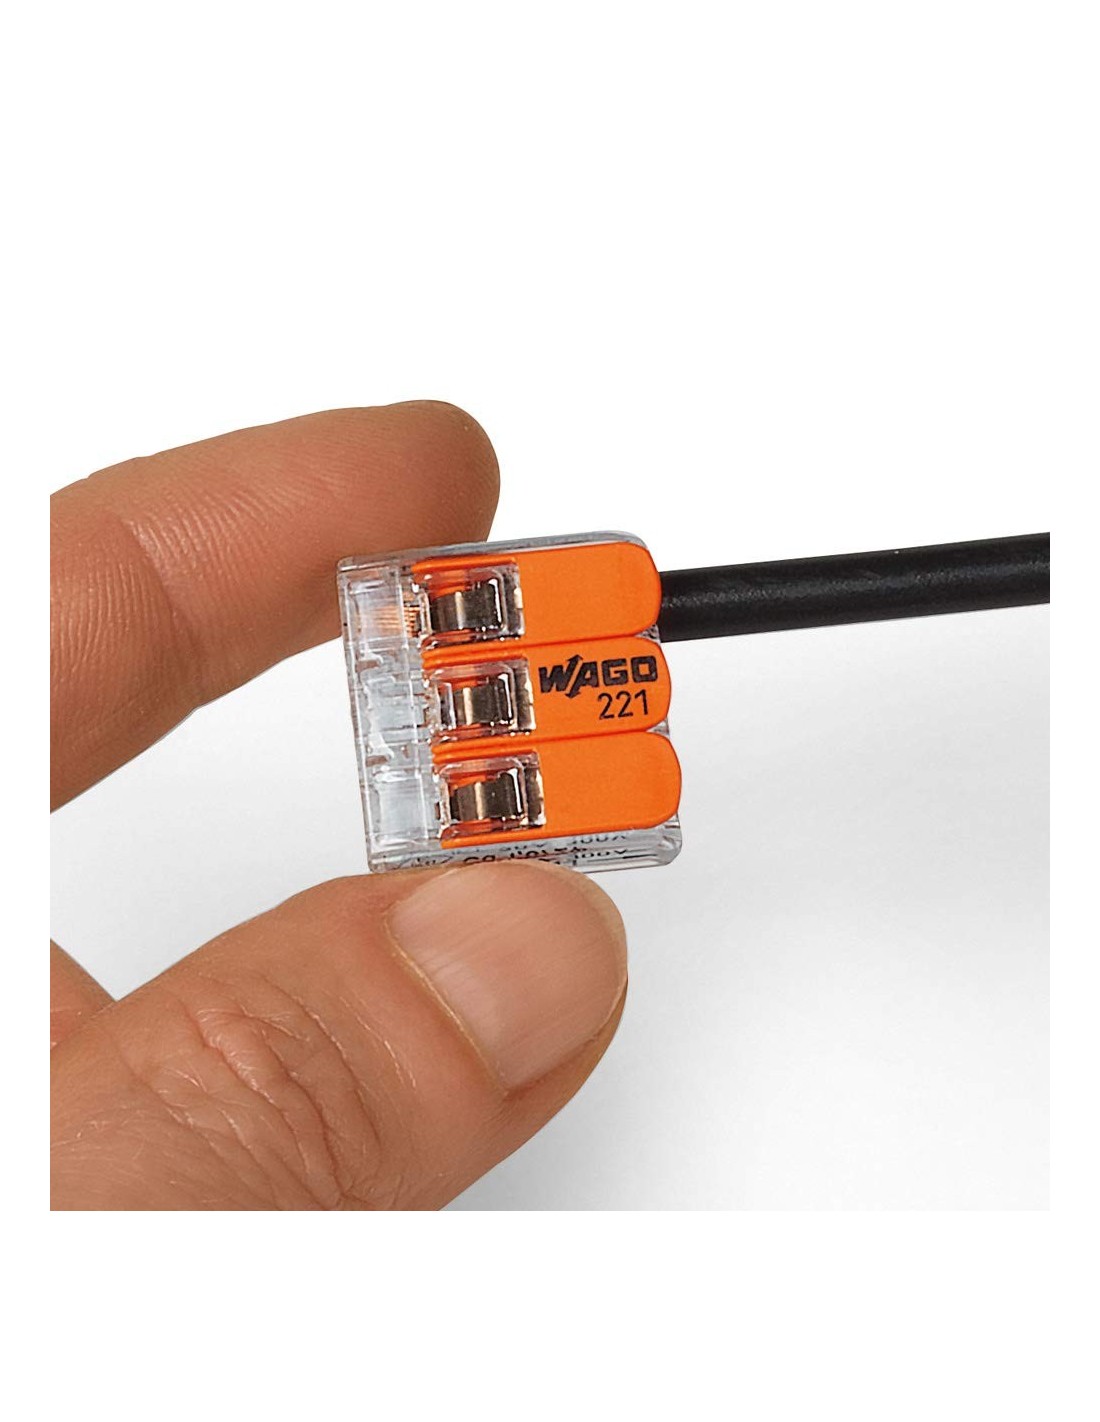 WAGO S221 3 mini bornes de connexion rapide 3 entrées fils souples et  rigides 0.5 à 6mm² - 221-613